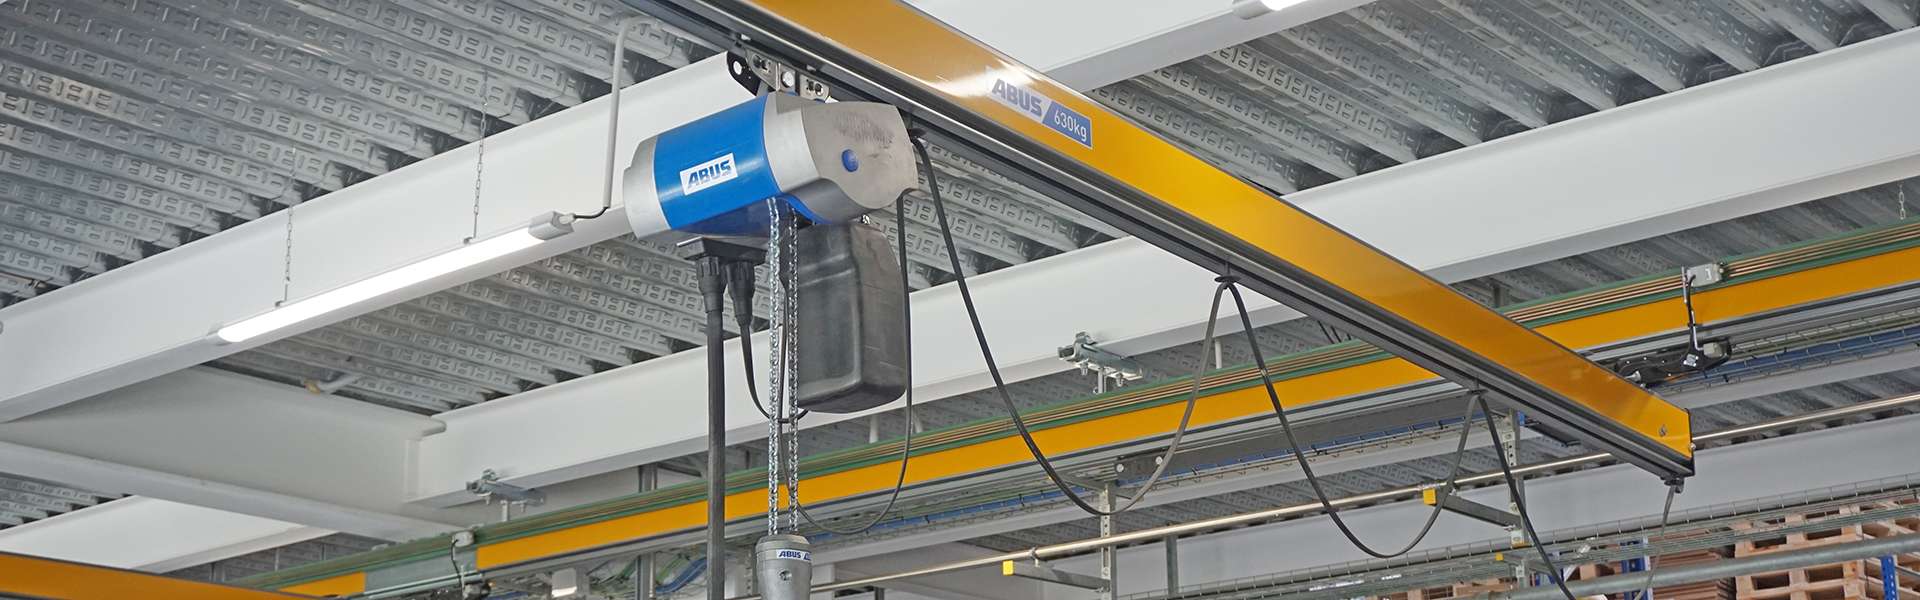 轻型悬挂系统HB和安博桥式起重机在泵制造厂的应用